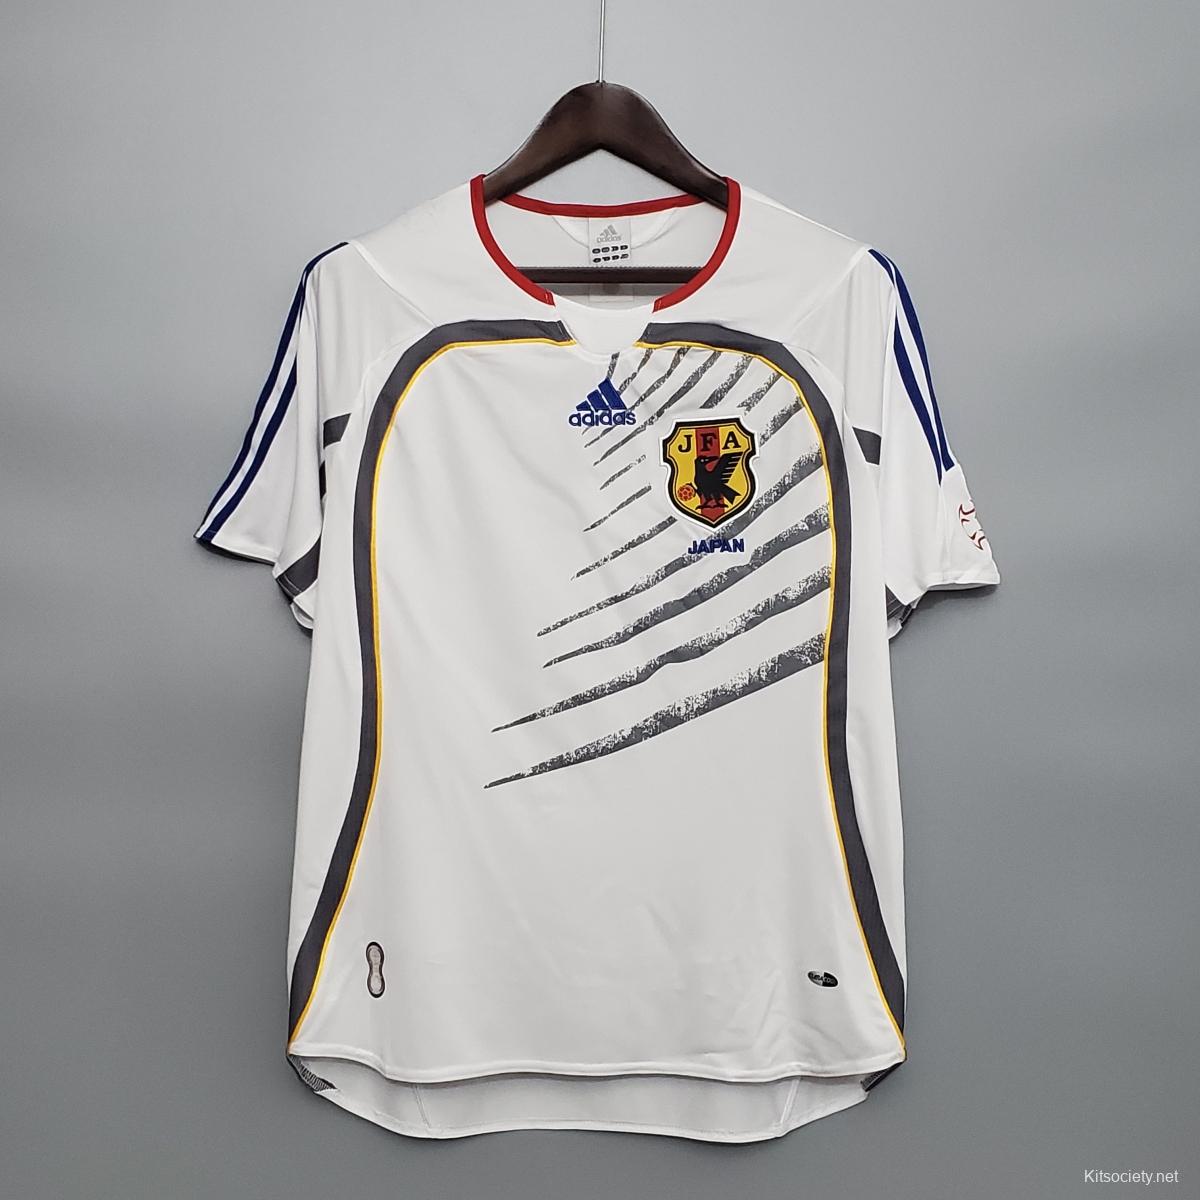 Retro 2006 Italy Away White Soccer Jersey - Kitsociety